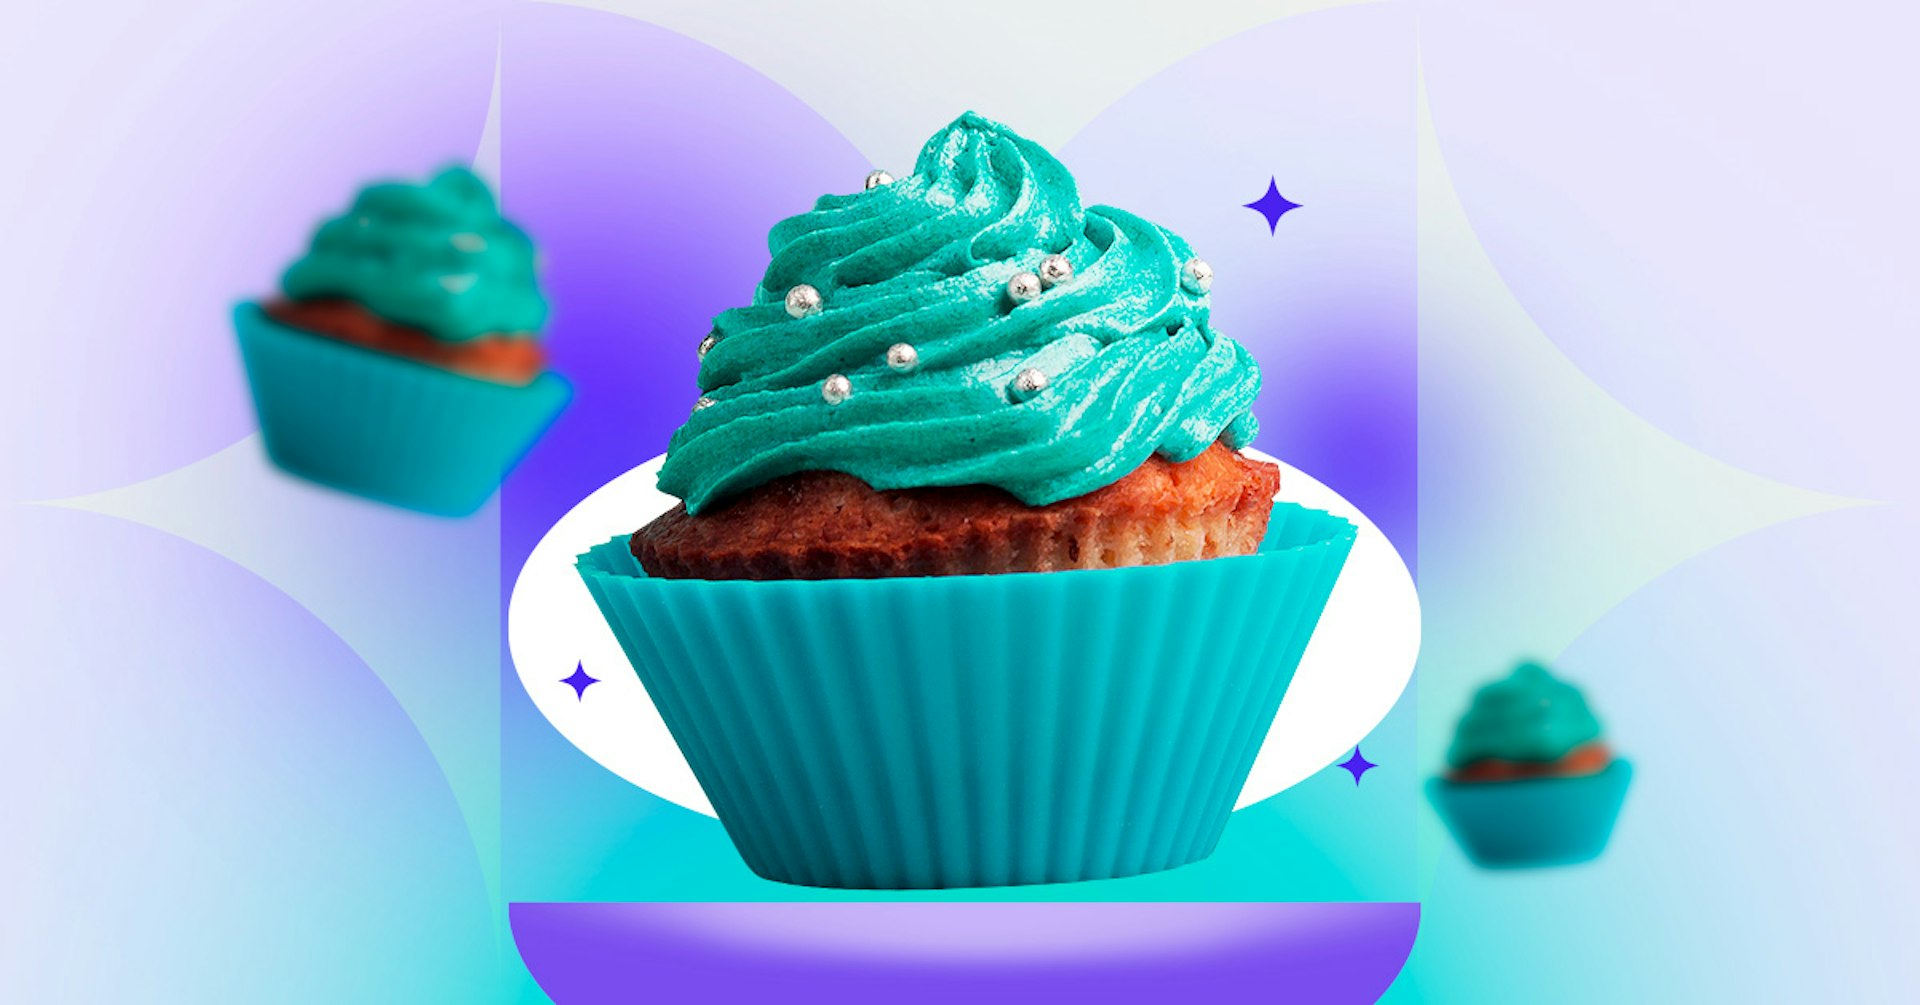 Aprende cómo hacer cupcakes caseros e impresiona a tus invitados